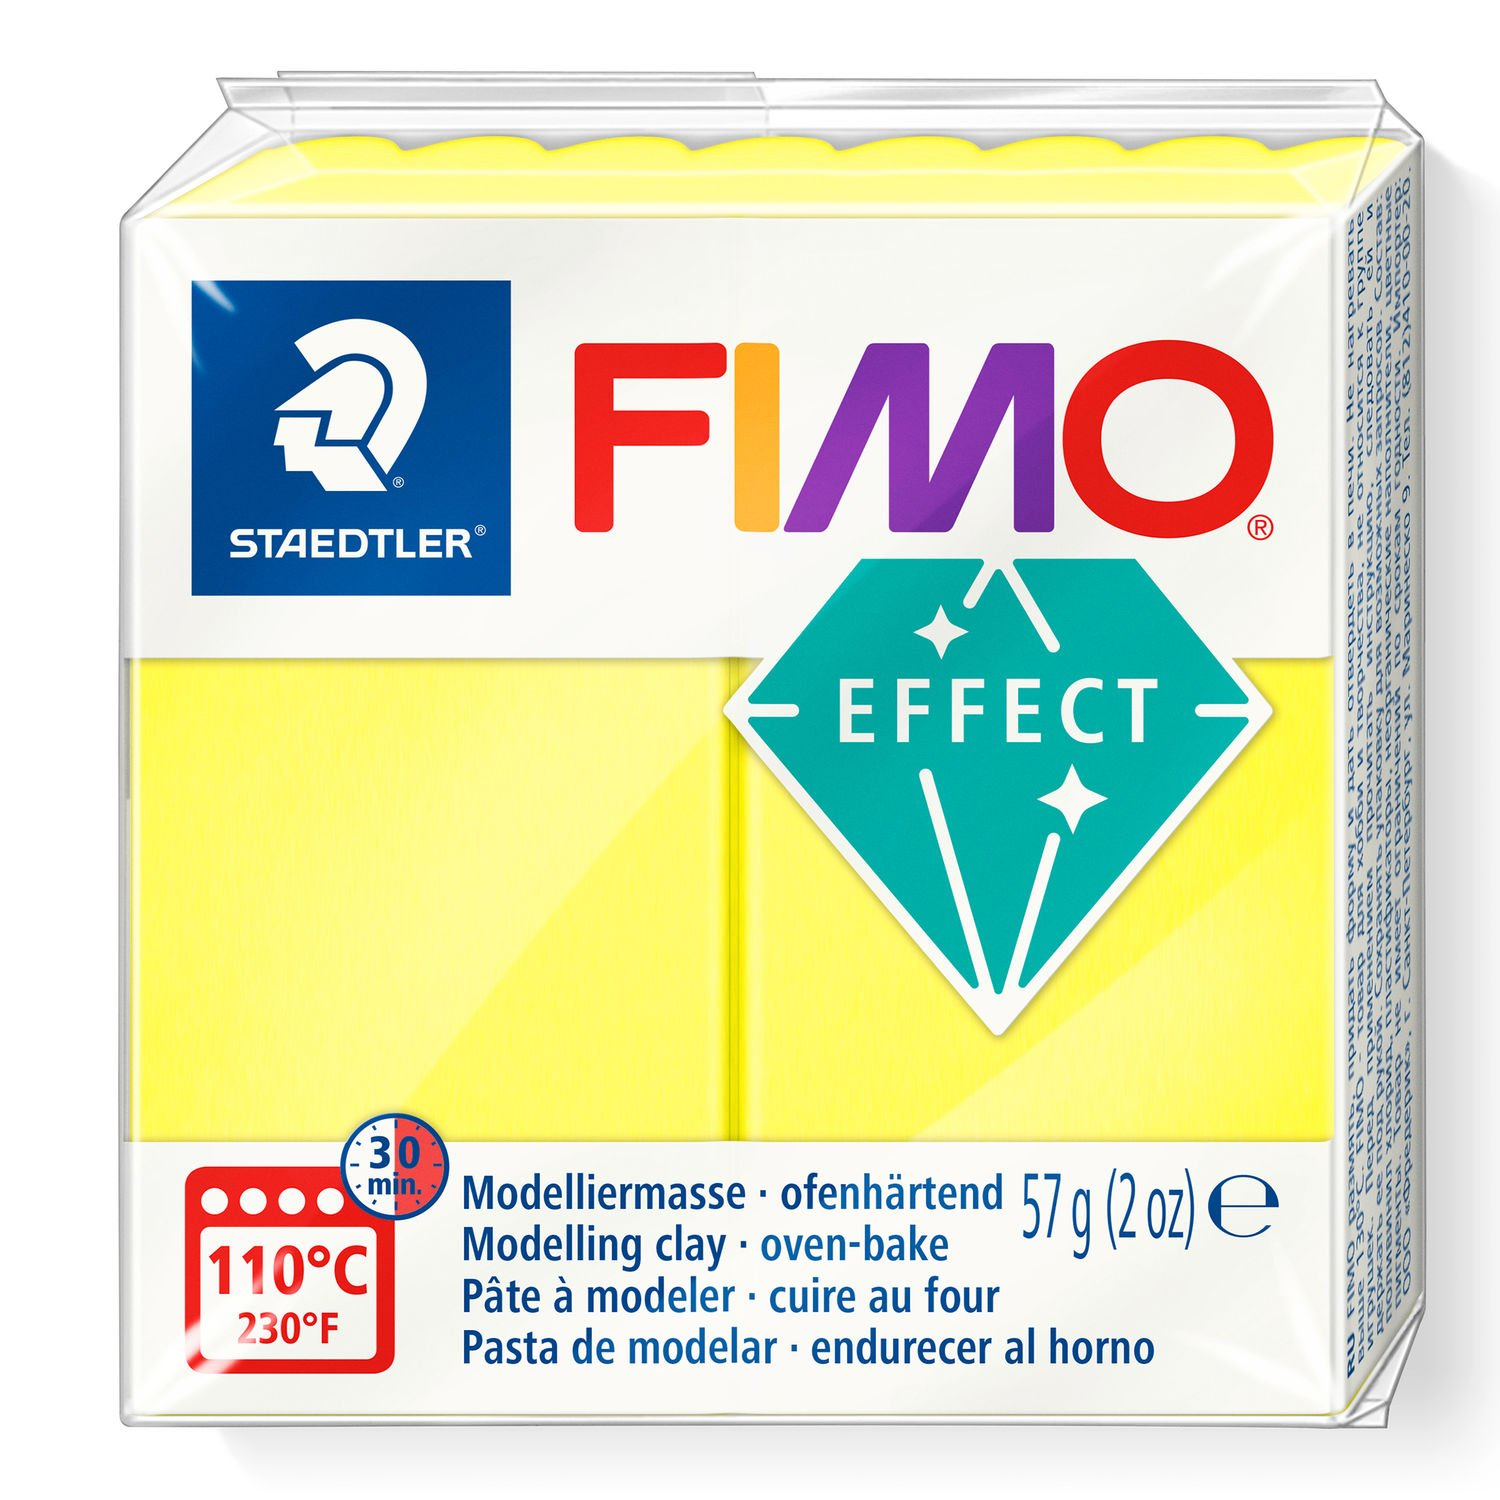 STAEDTLER FIMO 8010 - Knetmasse - Gelb - Erwachsene - 1 Stück(e) - Neon yellow - 1 Farben